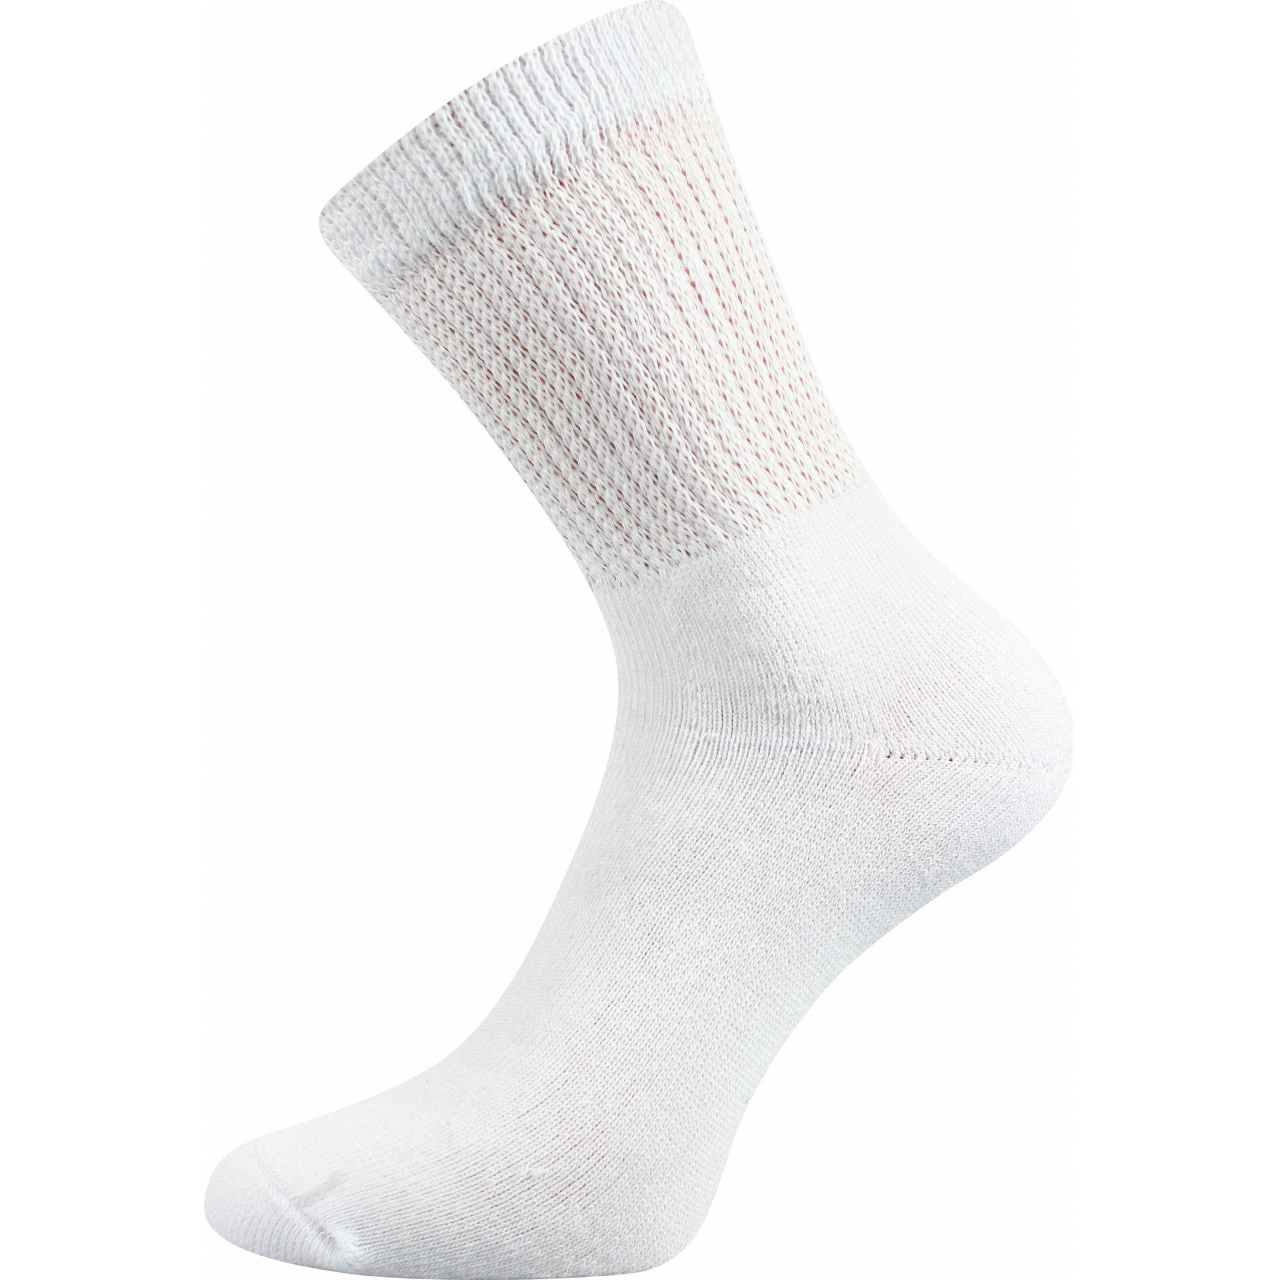 Ponožky trekingové unisex Boma 012-41-39 I - bílé, 43-46